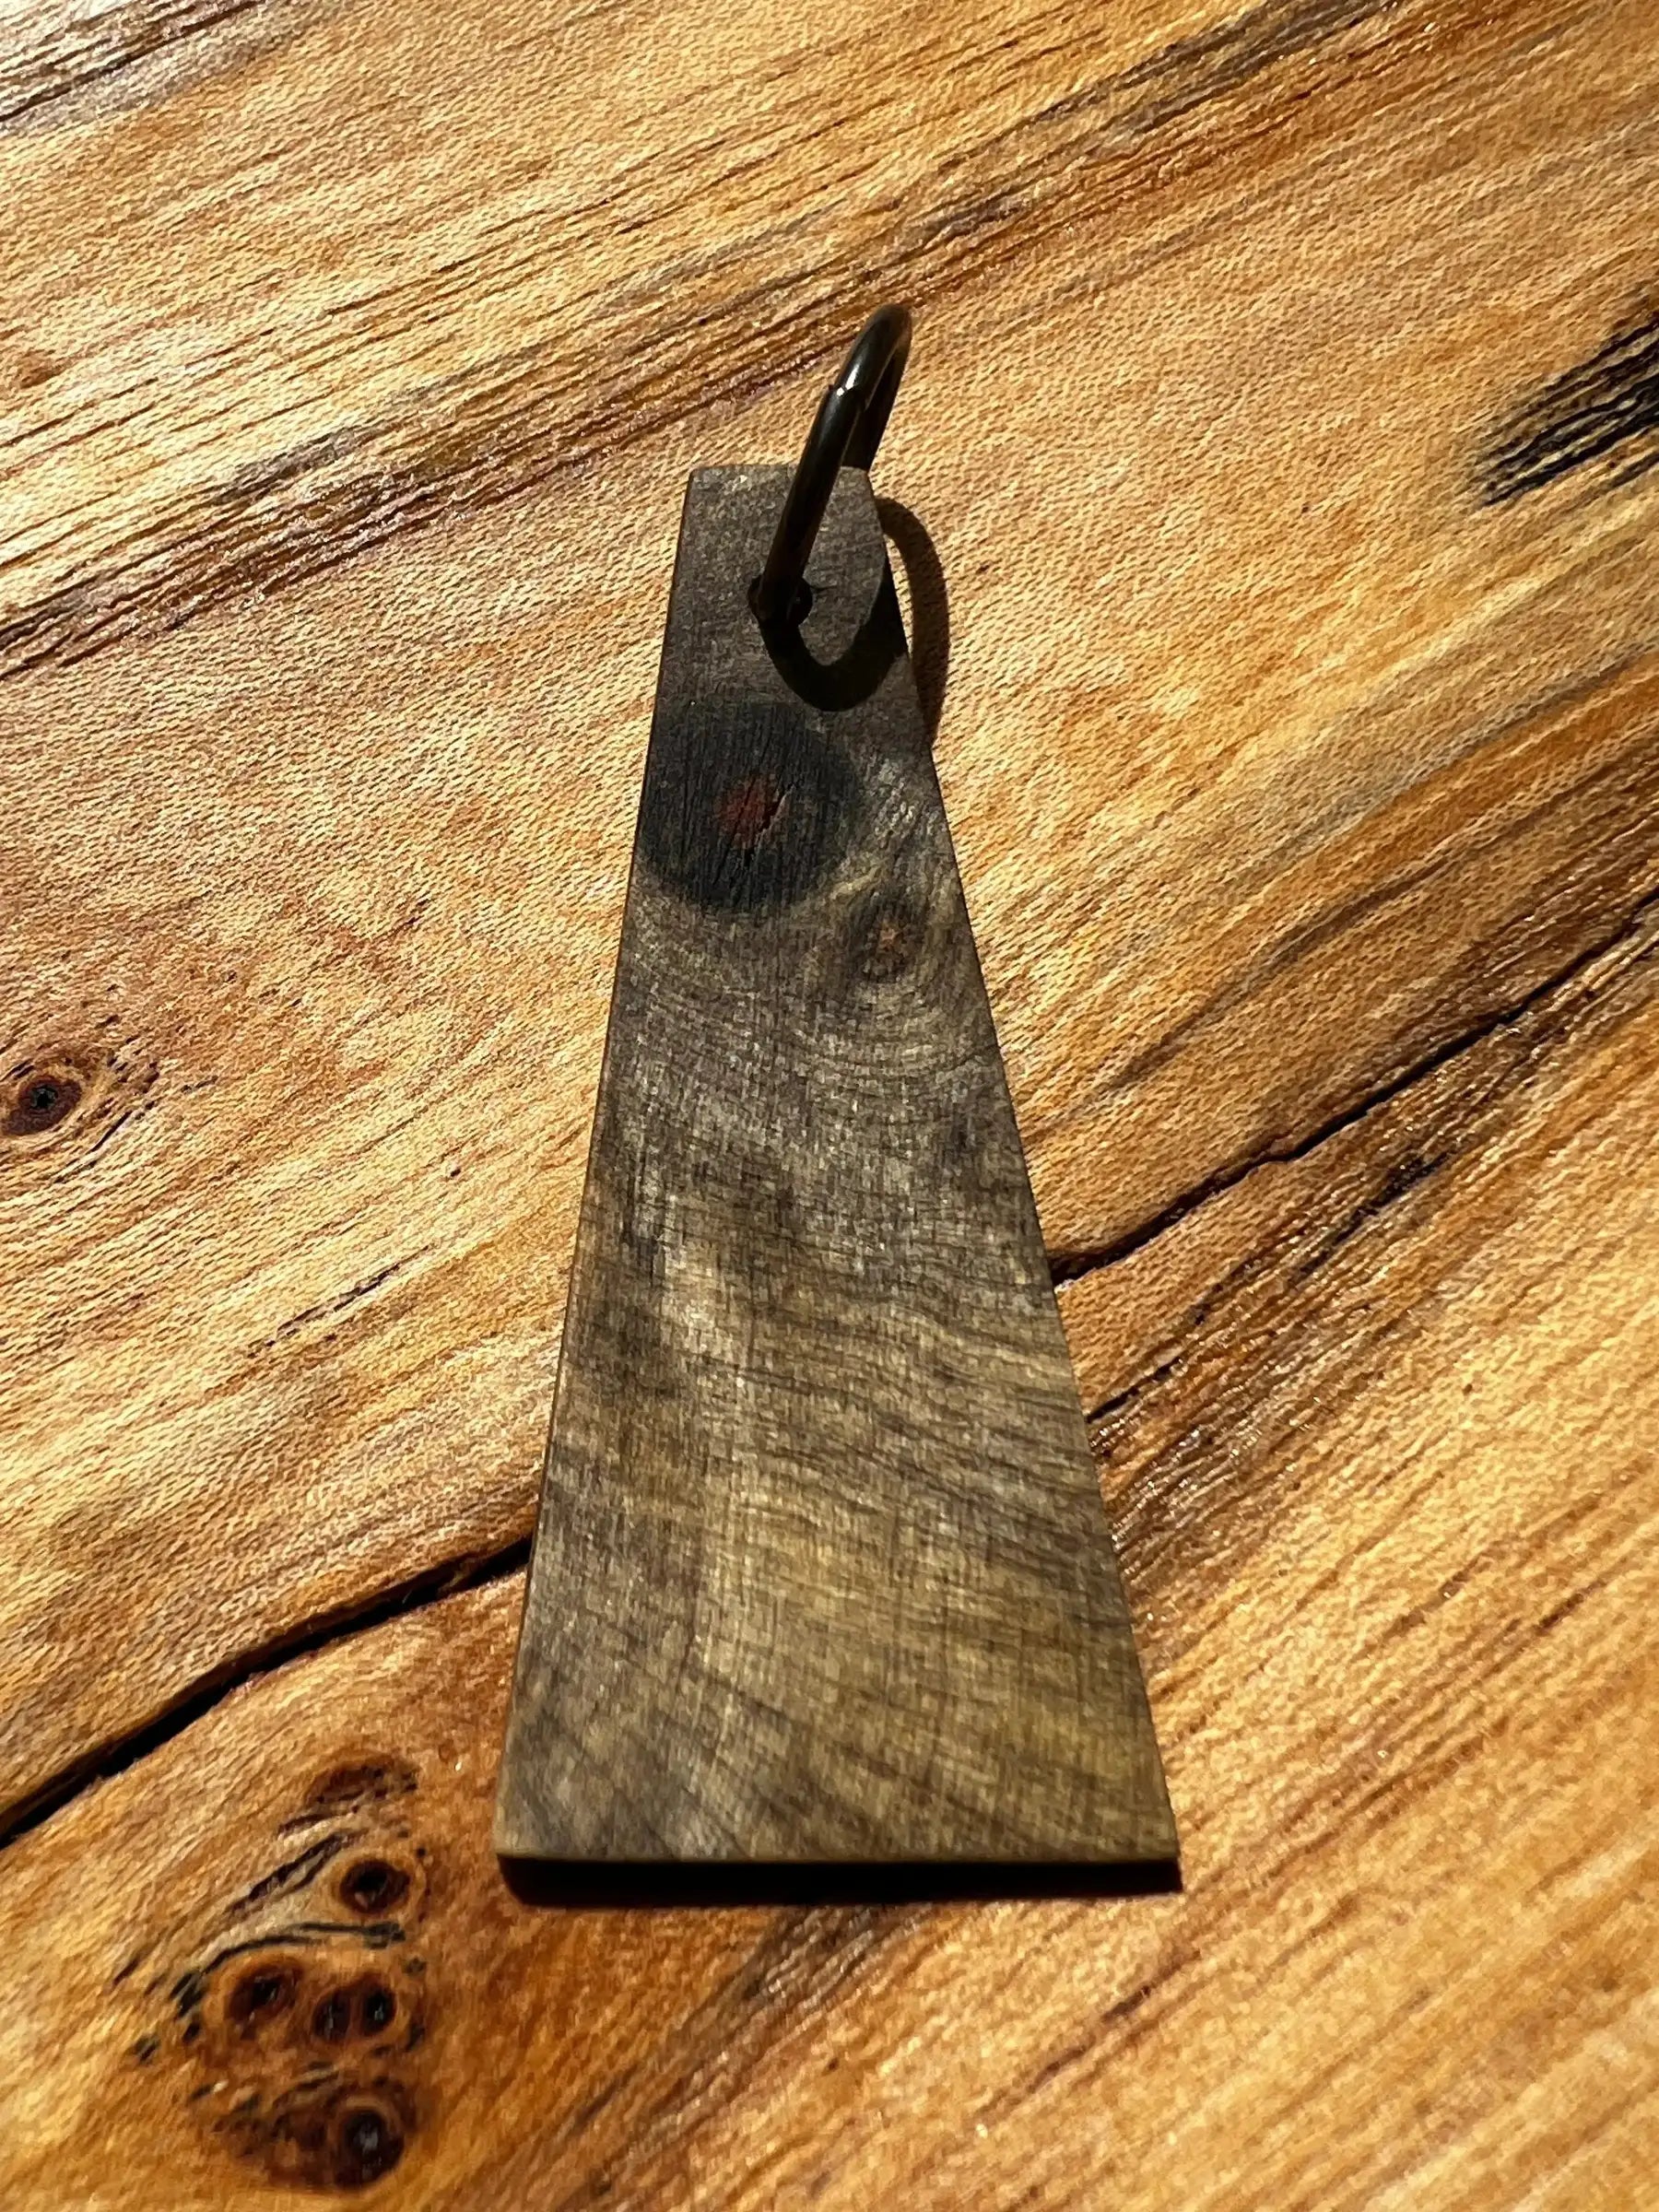 Buckeye Burl Wood Pendant | #003 | Ronin Machinewerks